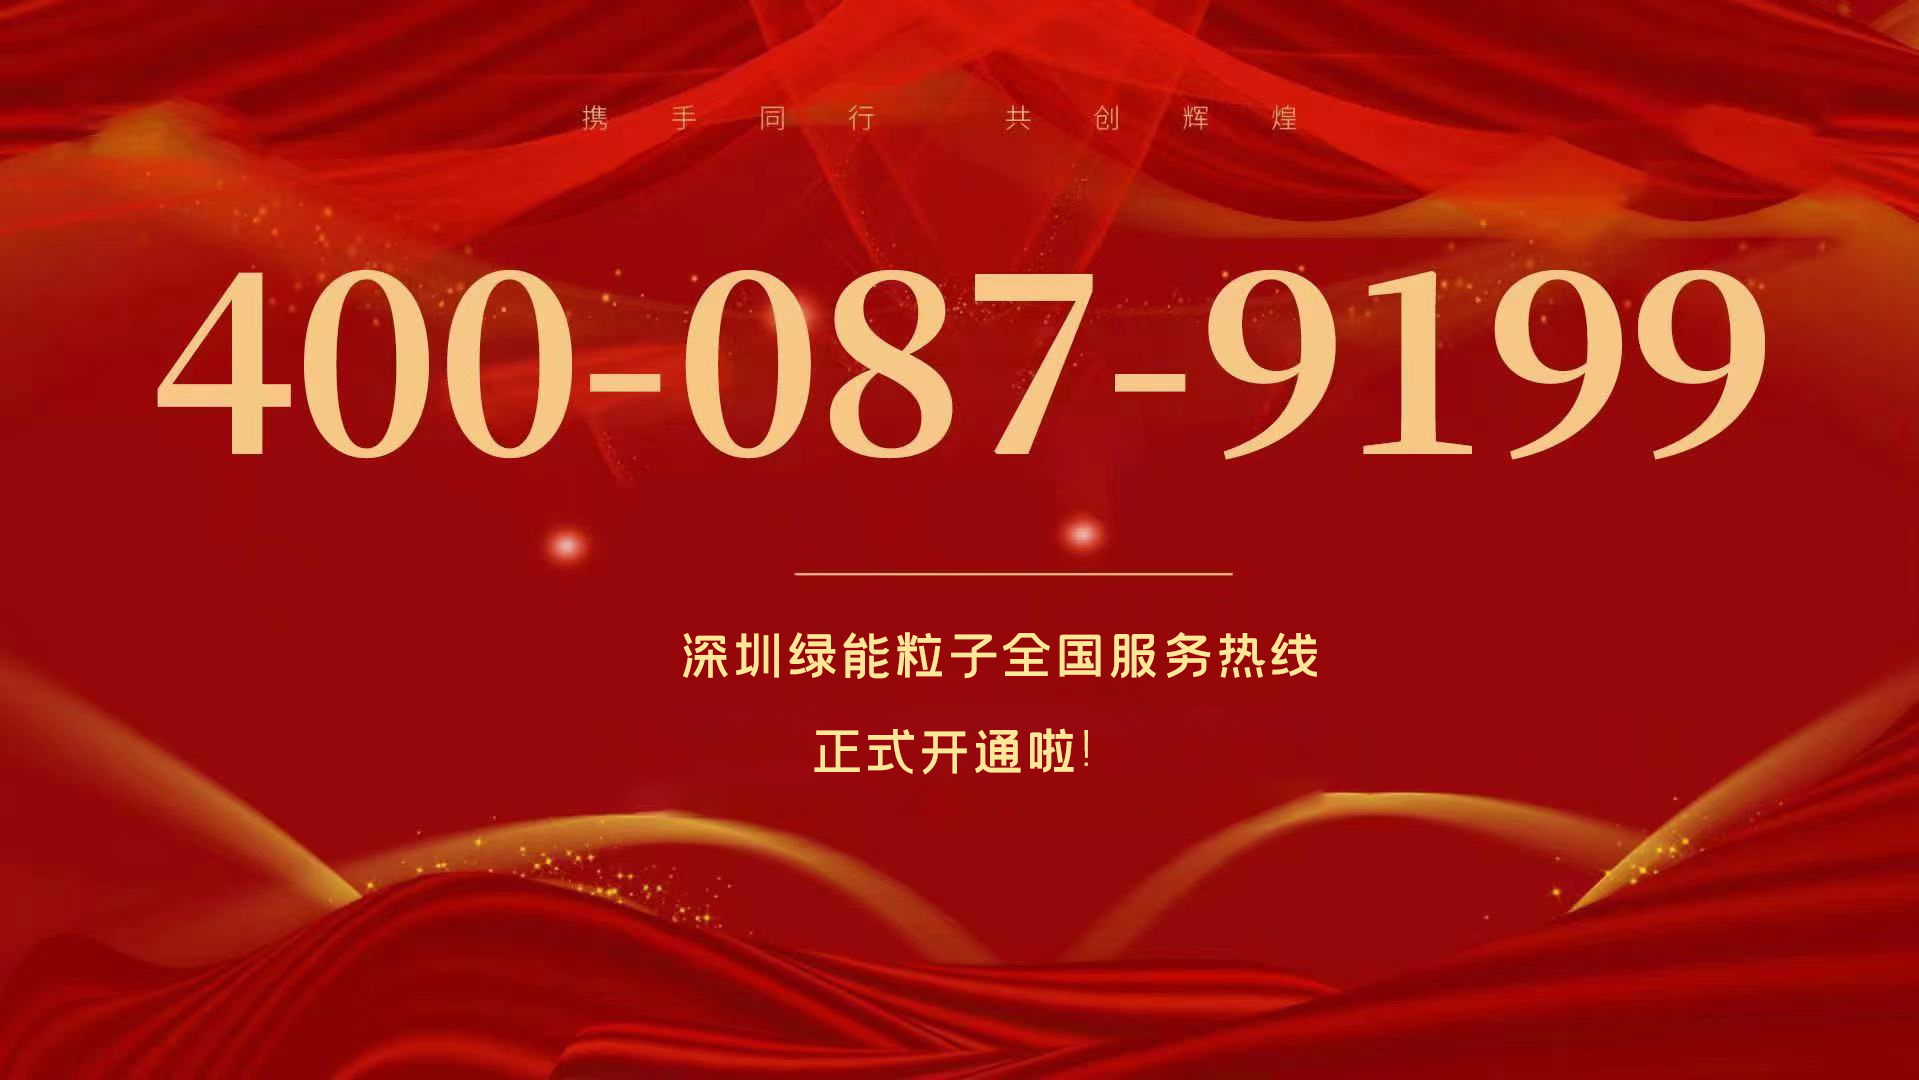  深圳尊龙凯时全国效劳热线400-087-9199正式开通啦！  